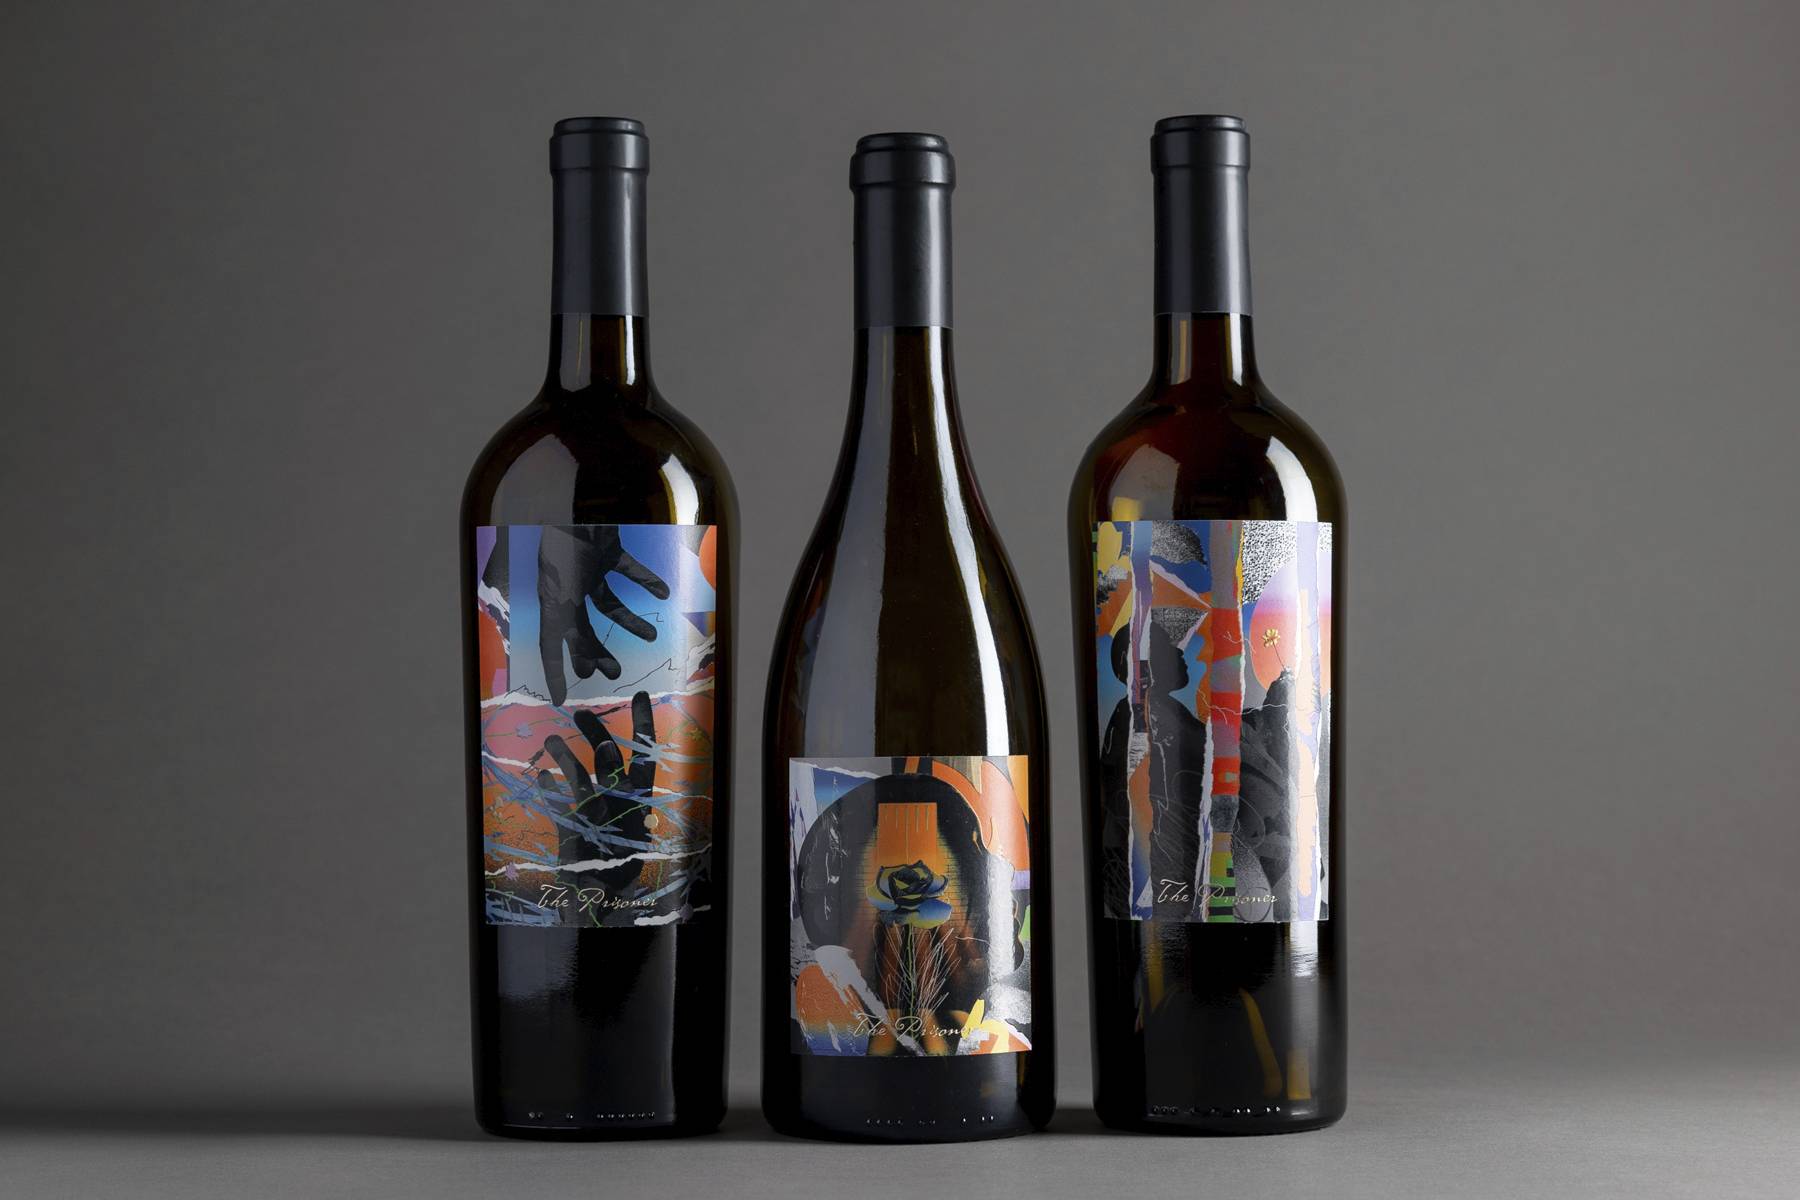 The Prisoner wine corrections collection bottles, designed by Chris Burnett